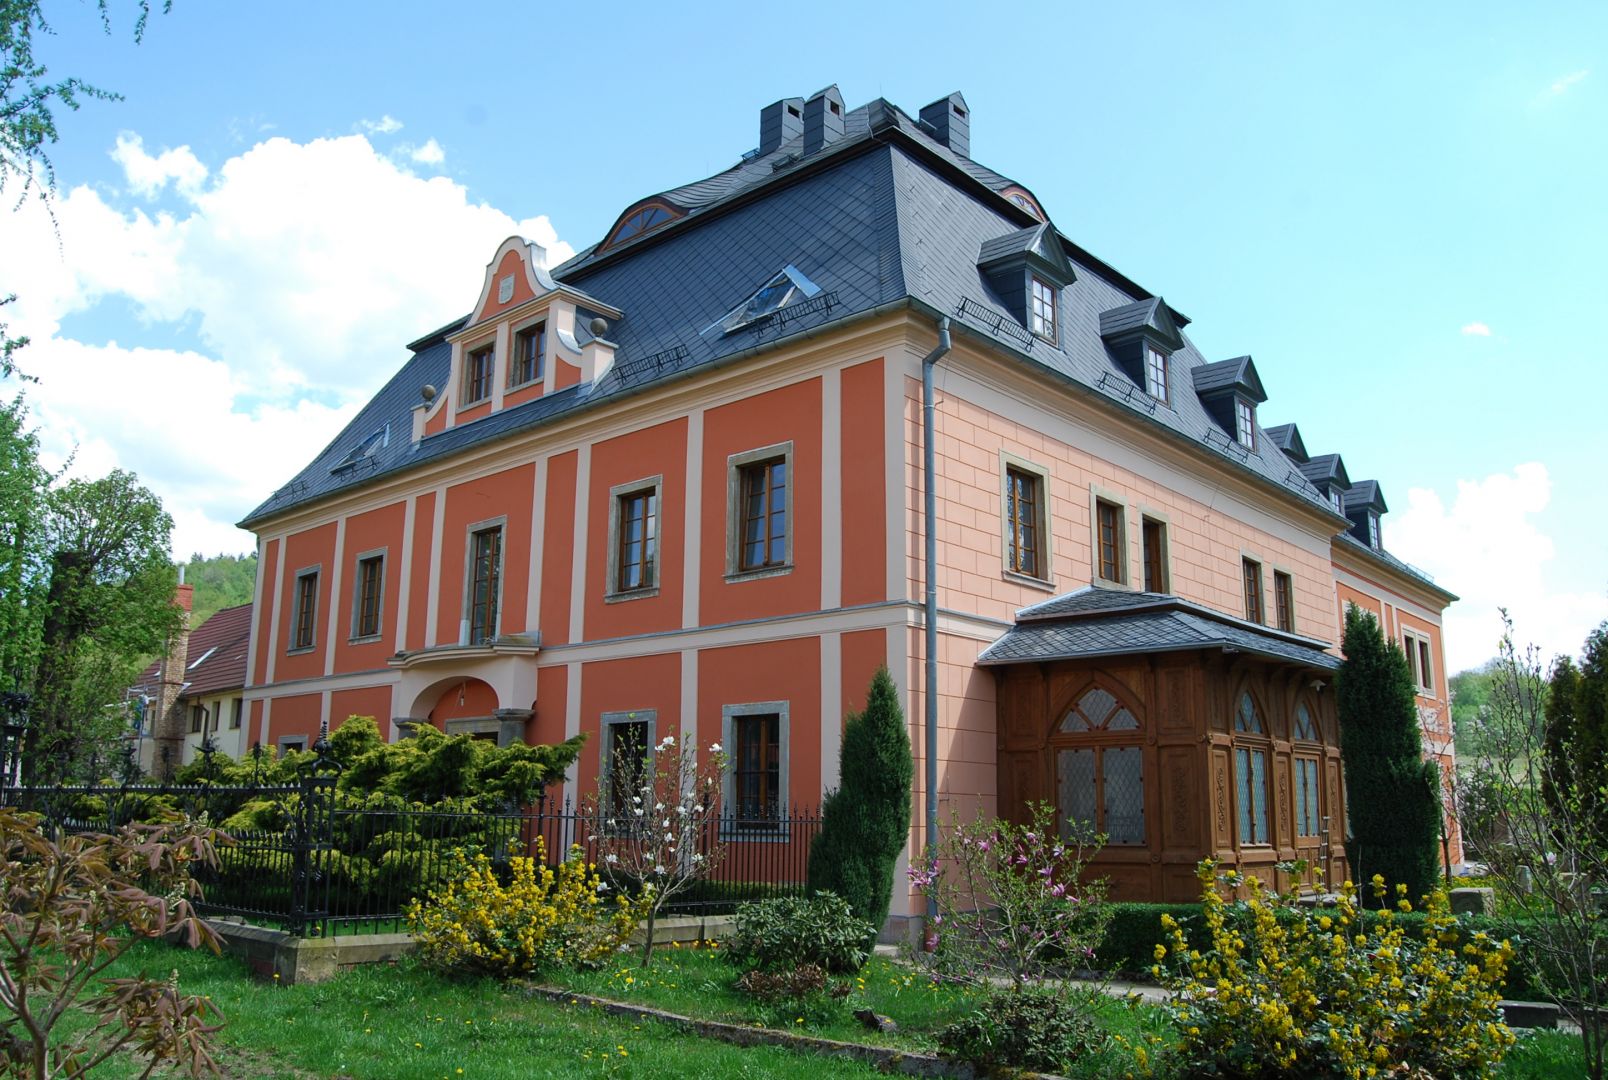 Wleniu Palace